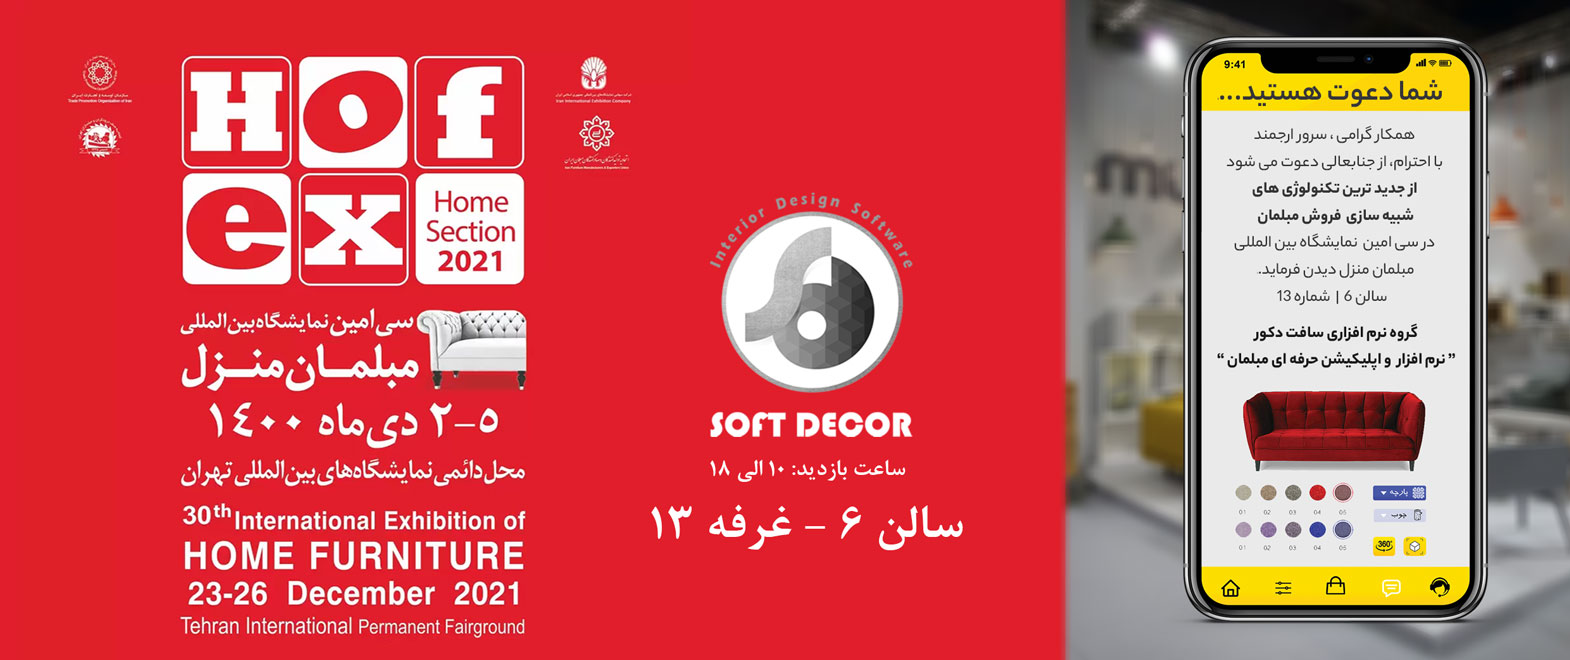 حضور سافت دکور در نمایشگاه مبلمان تهران Hofex 2021